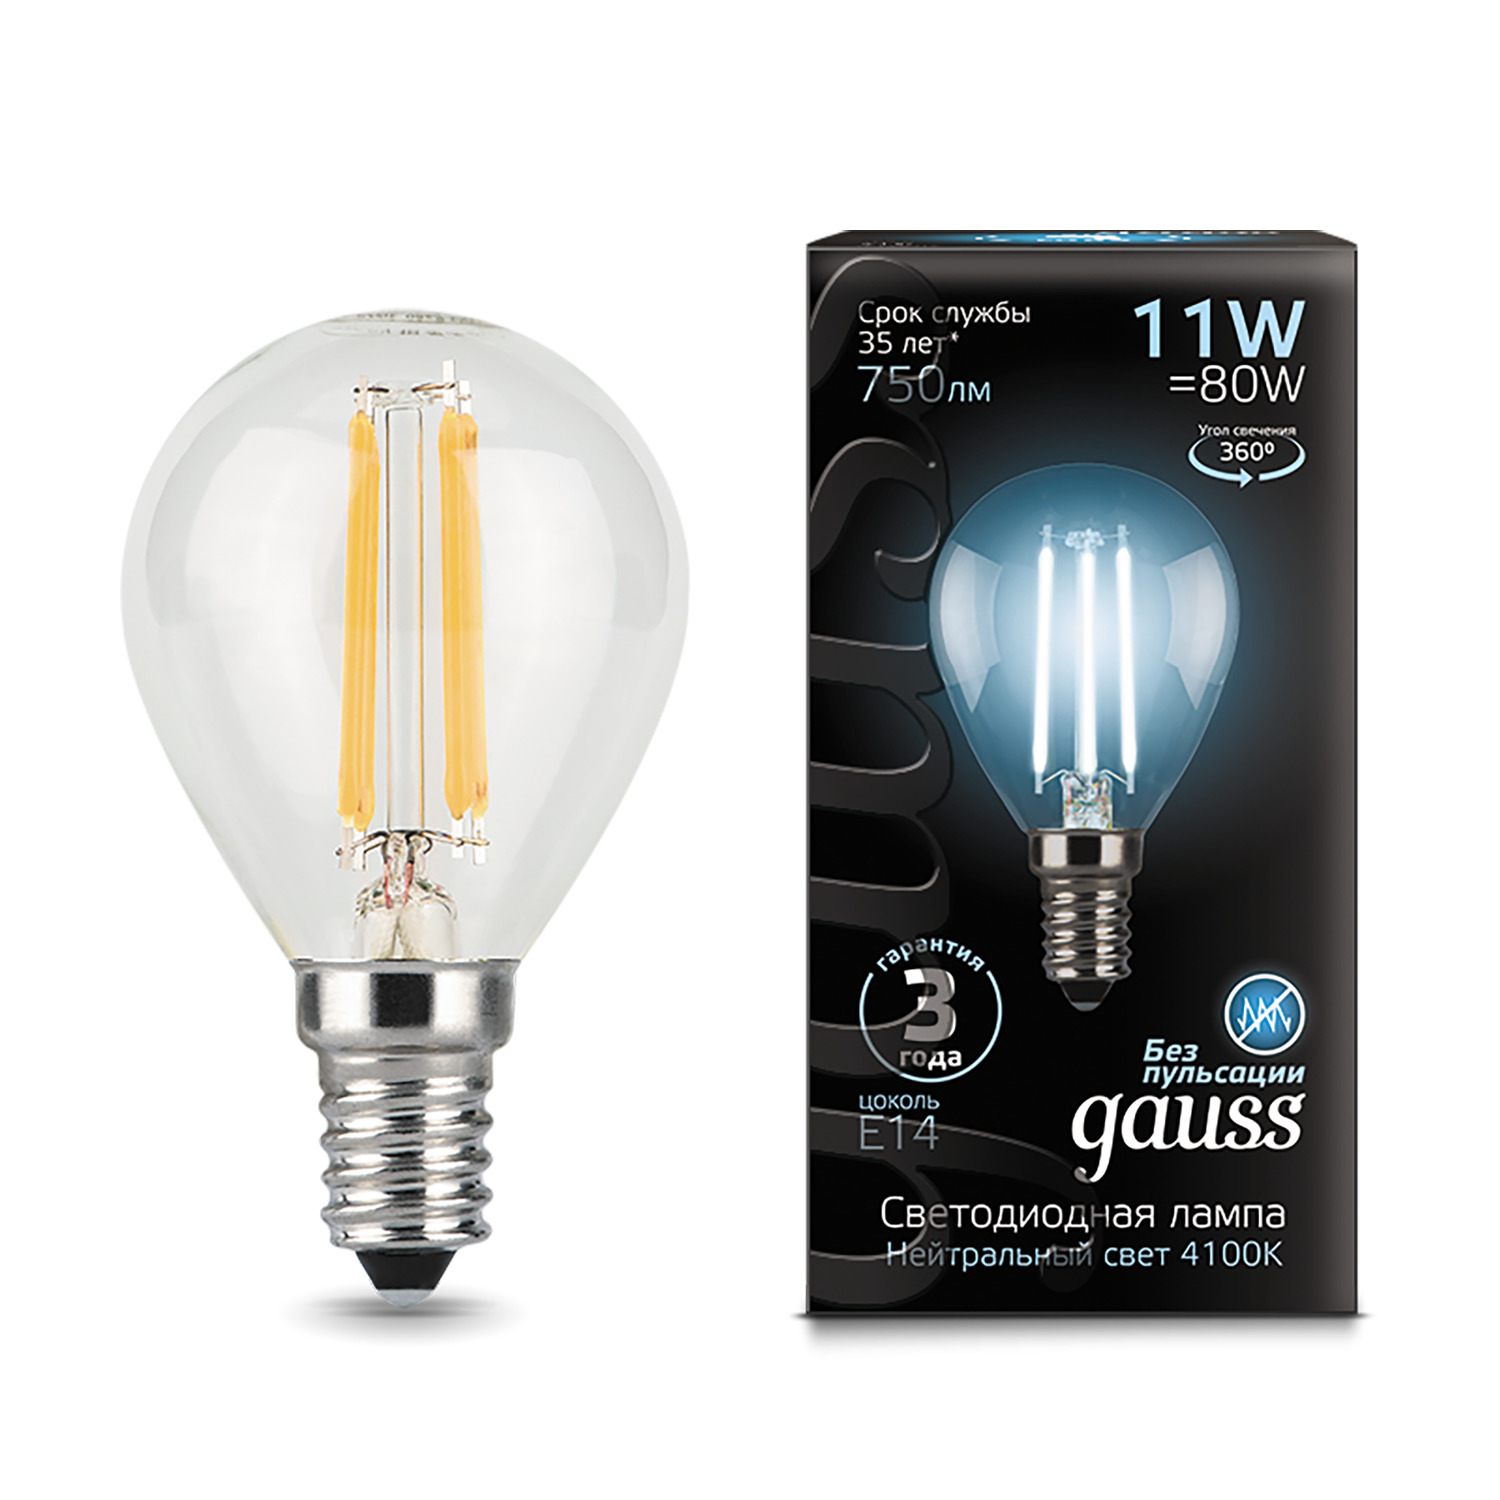 фото Упаковка ламп 10 штук лампа gauss filament шар 11w 830lm 4100к е14 led